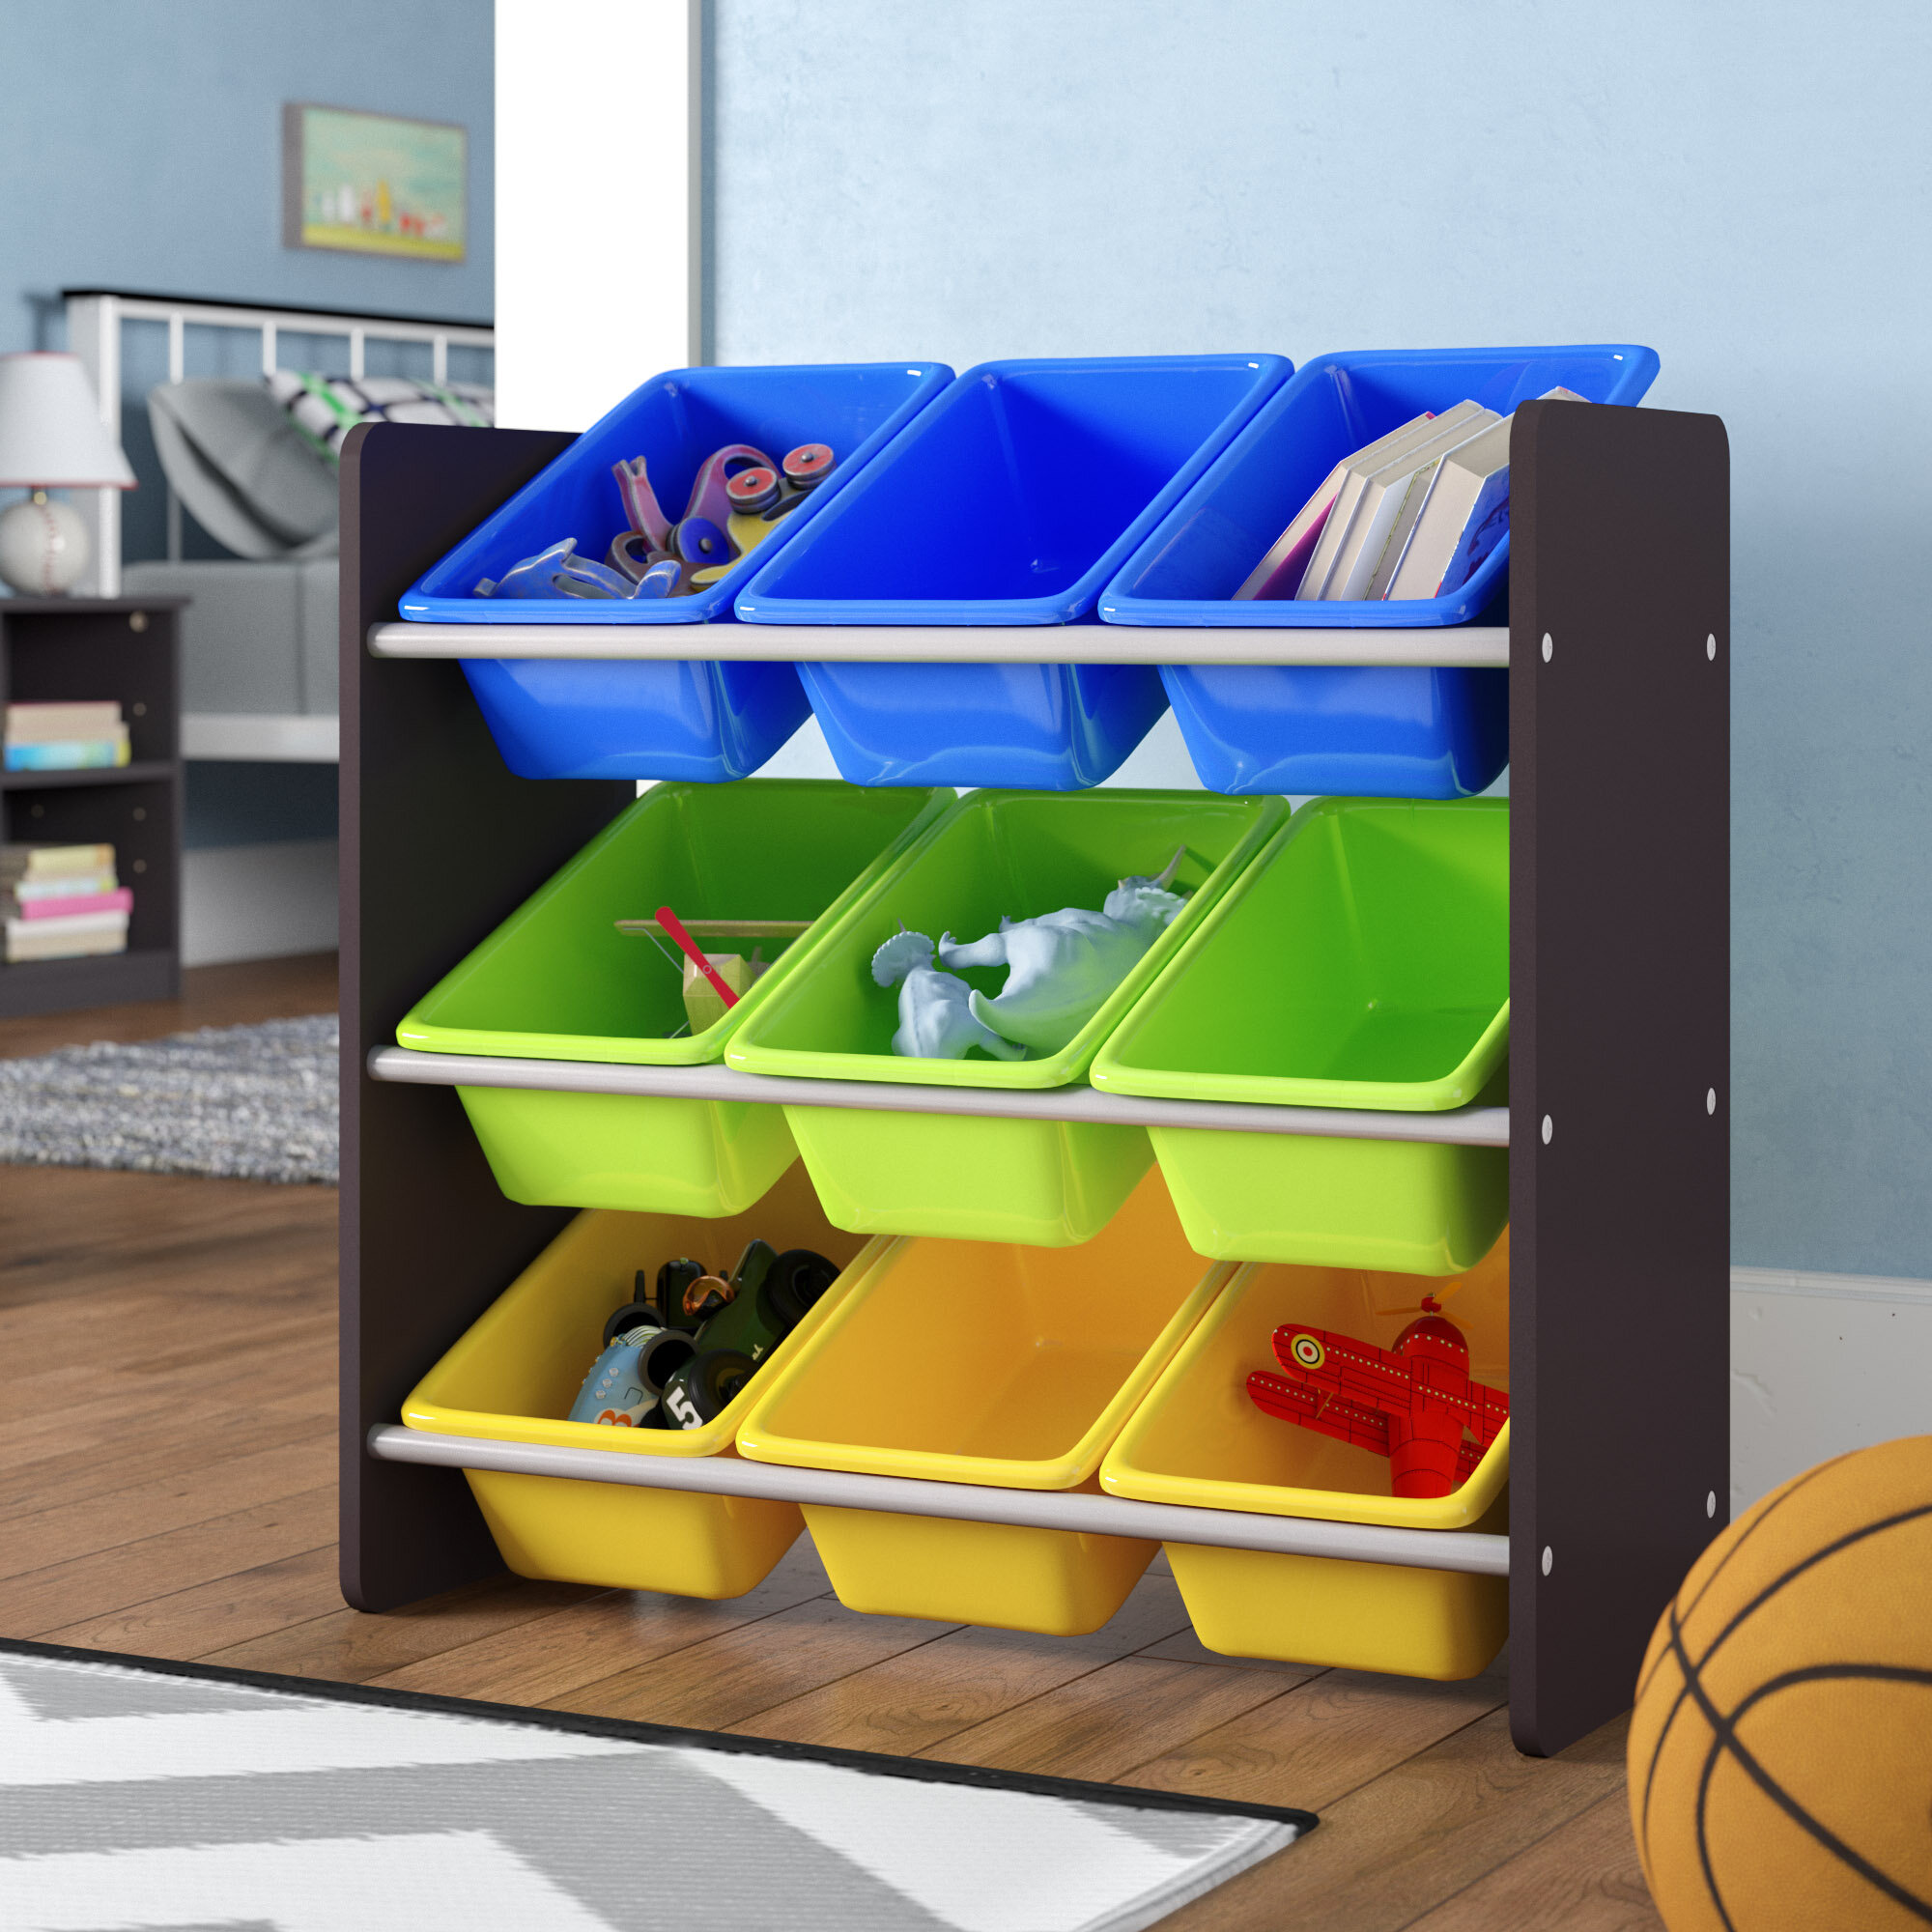 children's toy bin organizer